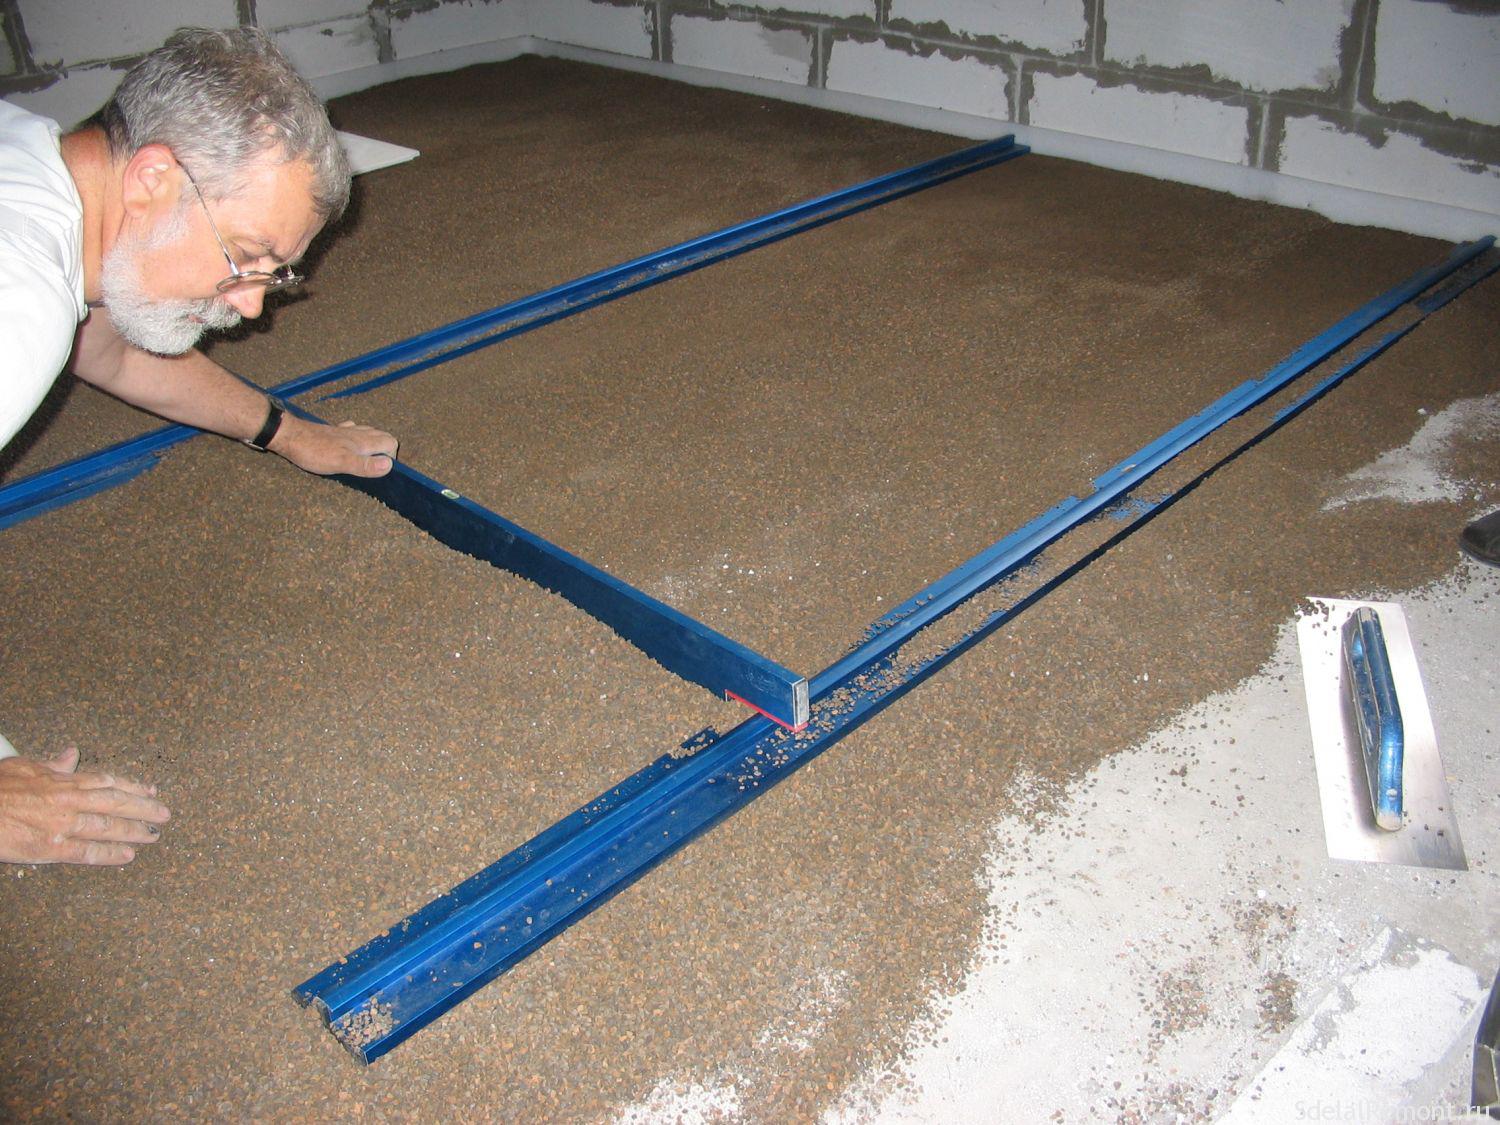  залить ровно бетонный пол:  залить пол в доме или гараже бетоном .